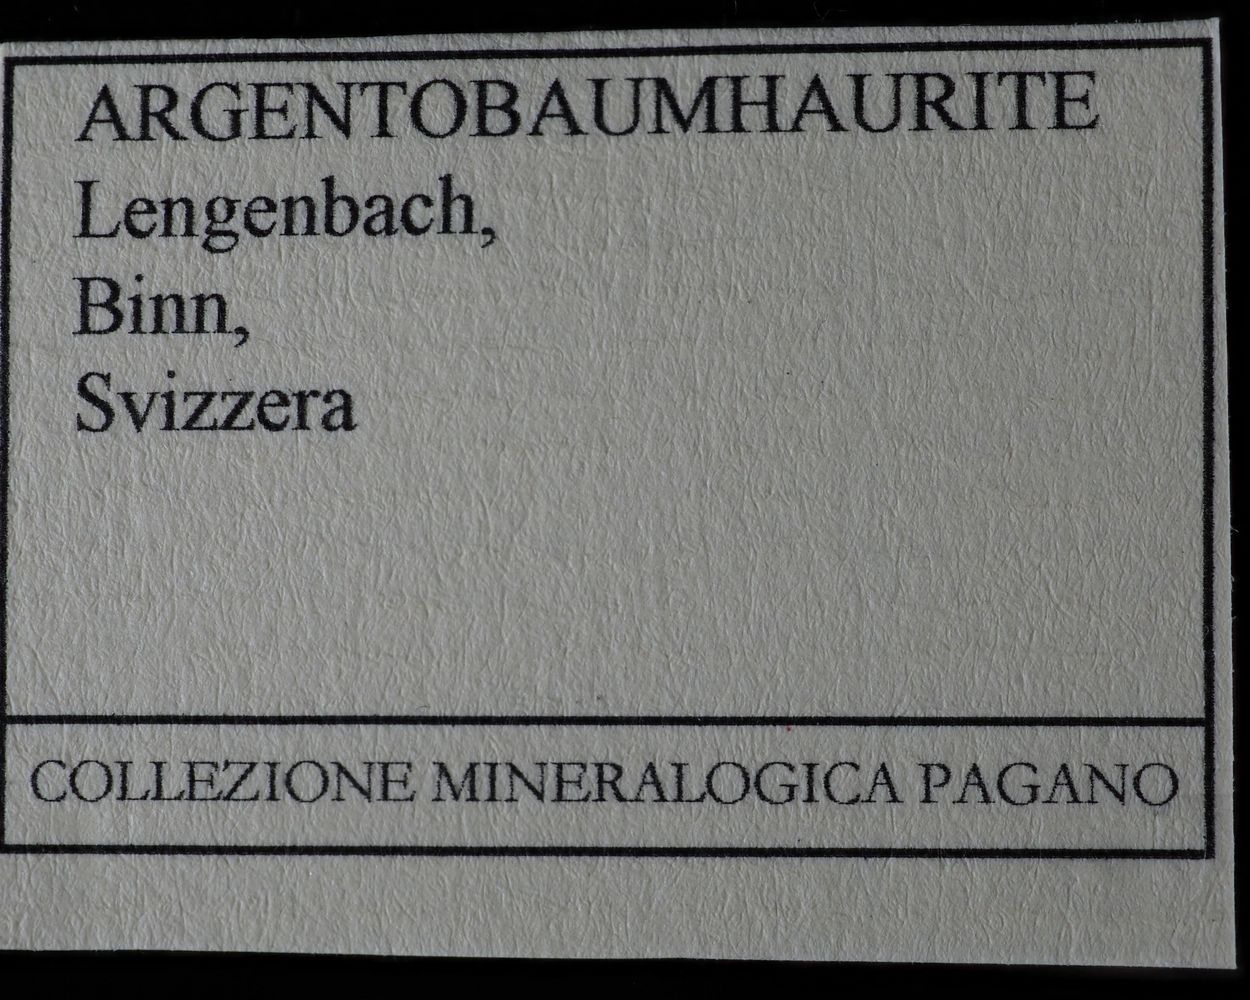 Argentobaumhauerite